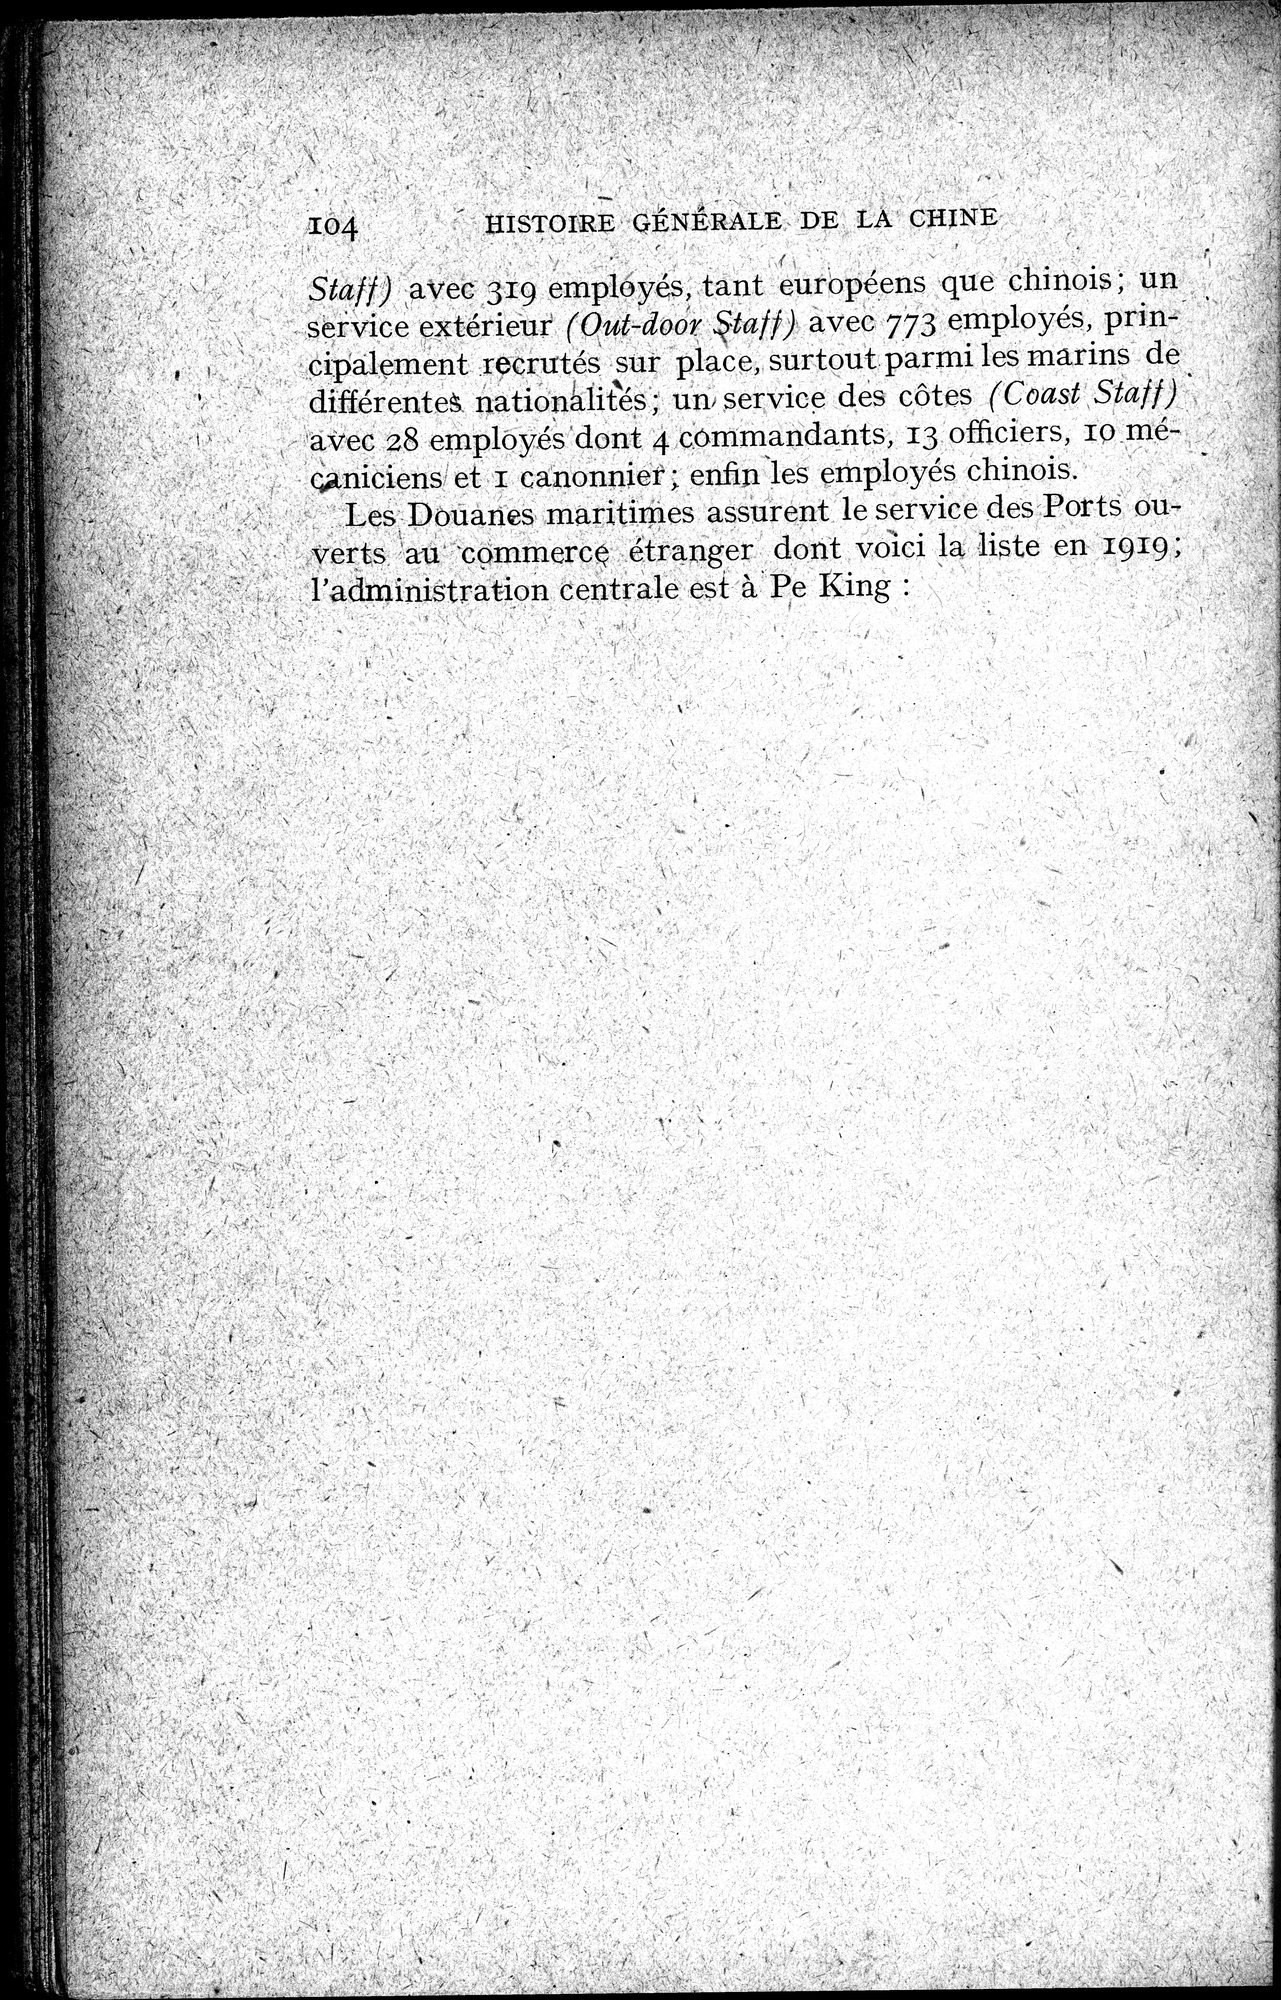 Histoire Générale de la Chine : vol.4 / Page 106 (Grayscale High Resolution Image)